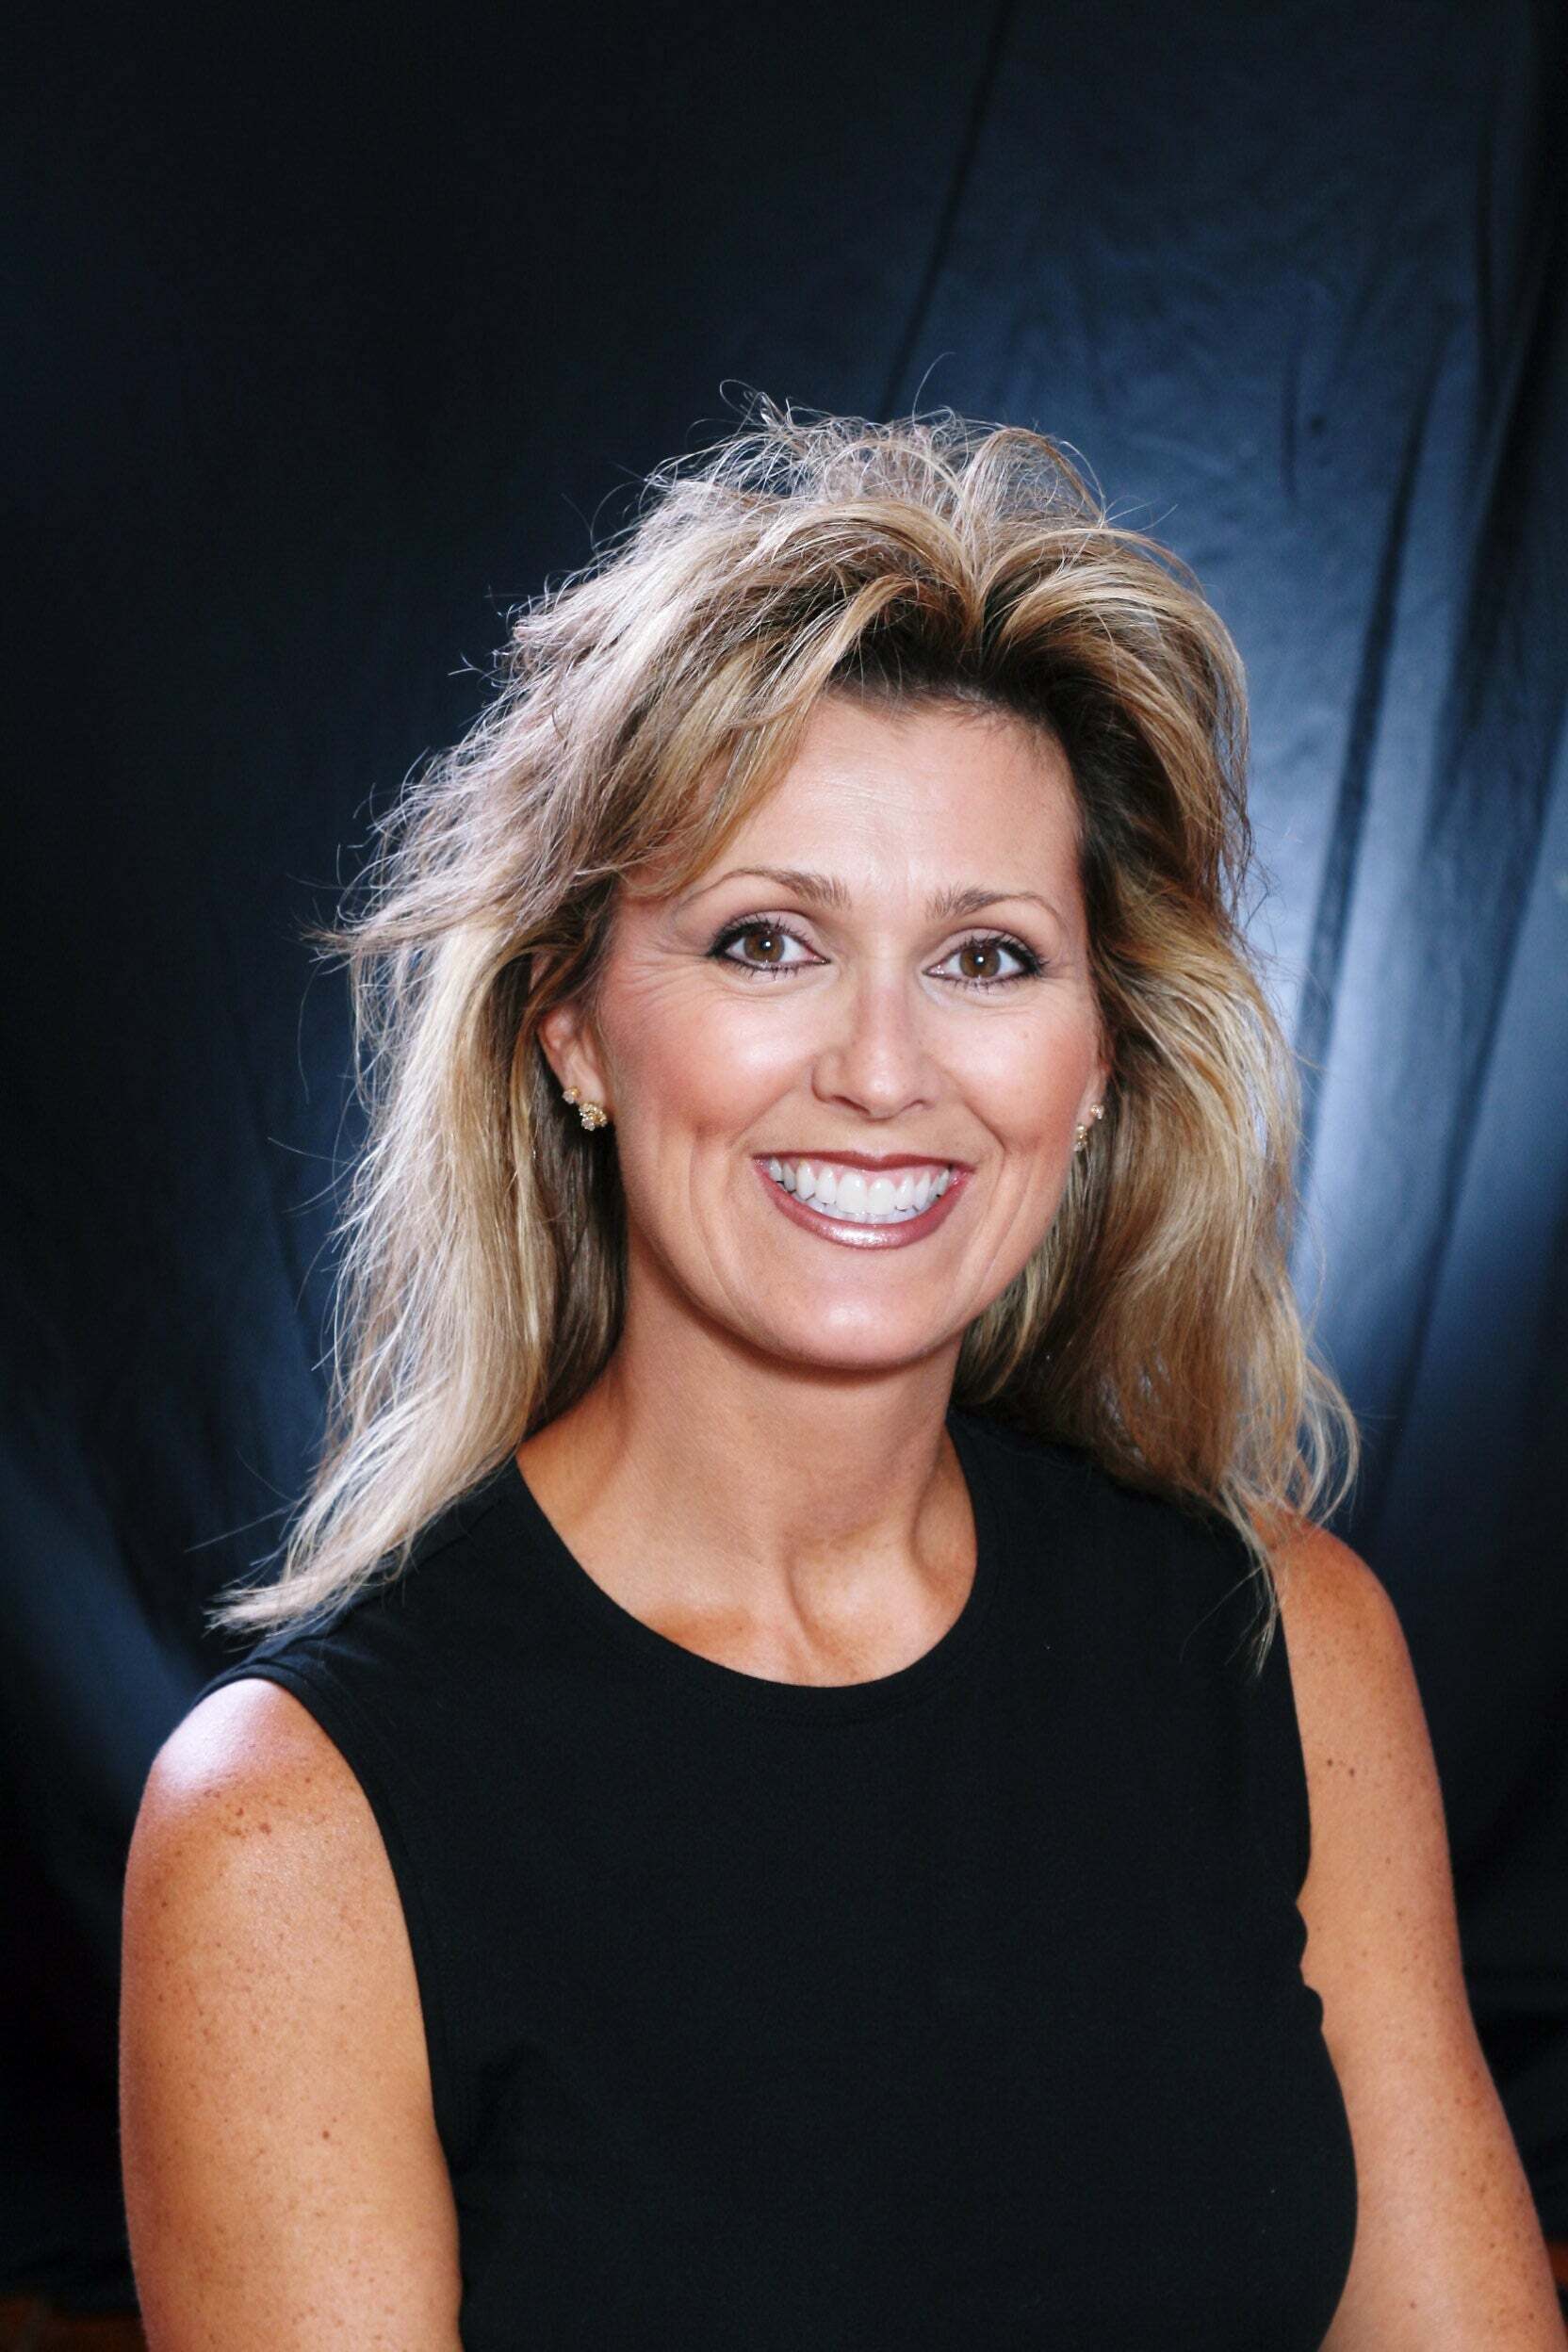 Patricia Nemes, Real Estate Salesperson in Plymouth, Tassinari & Associates, Inc